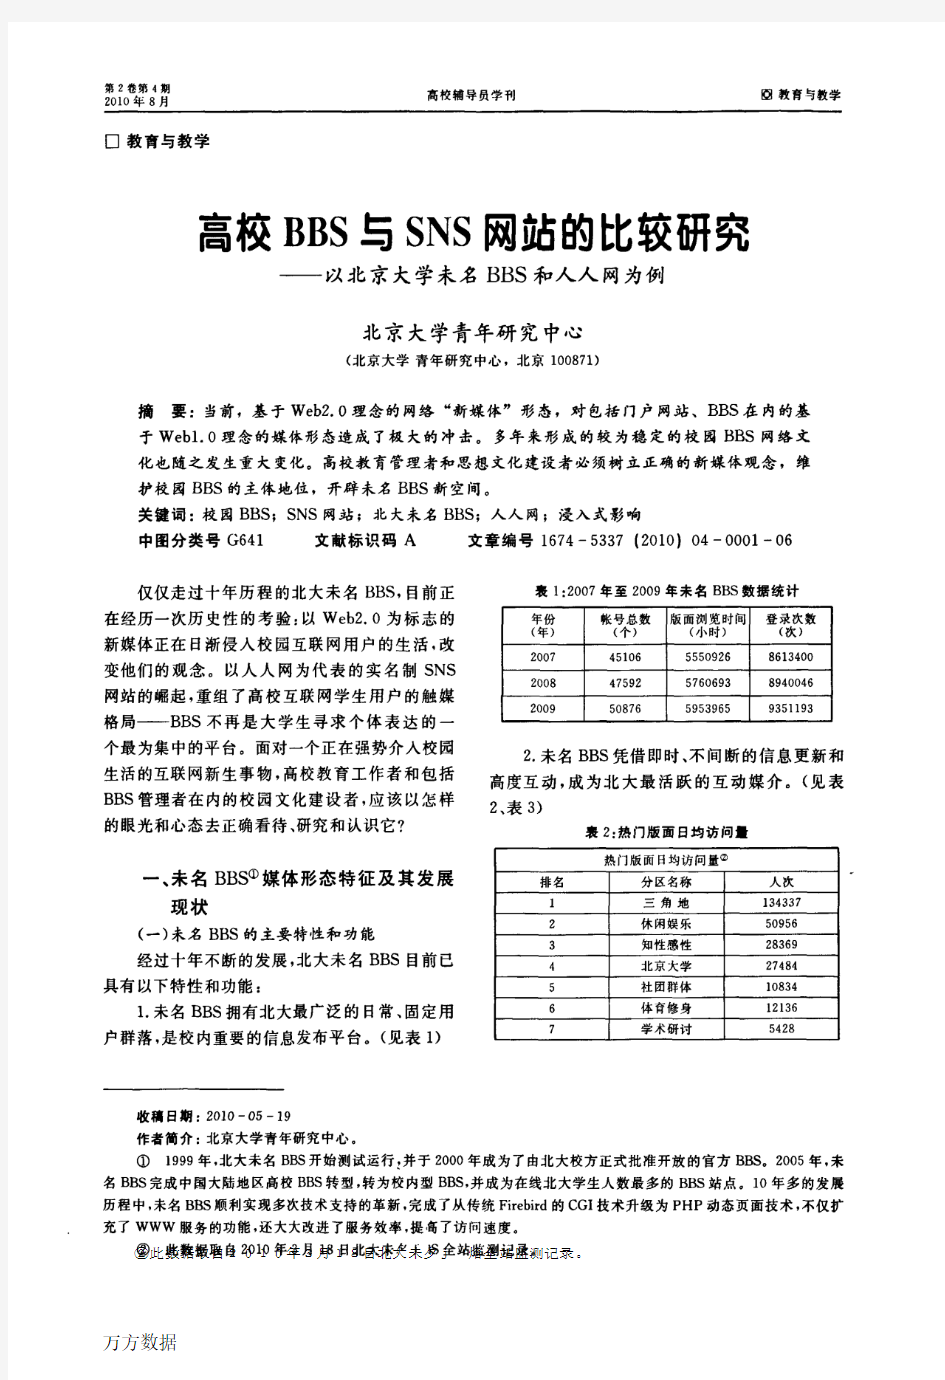 高校BBS与SNS网站的比较研究——以北京大学未名BBS和人人网为例